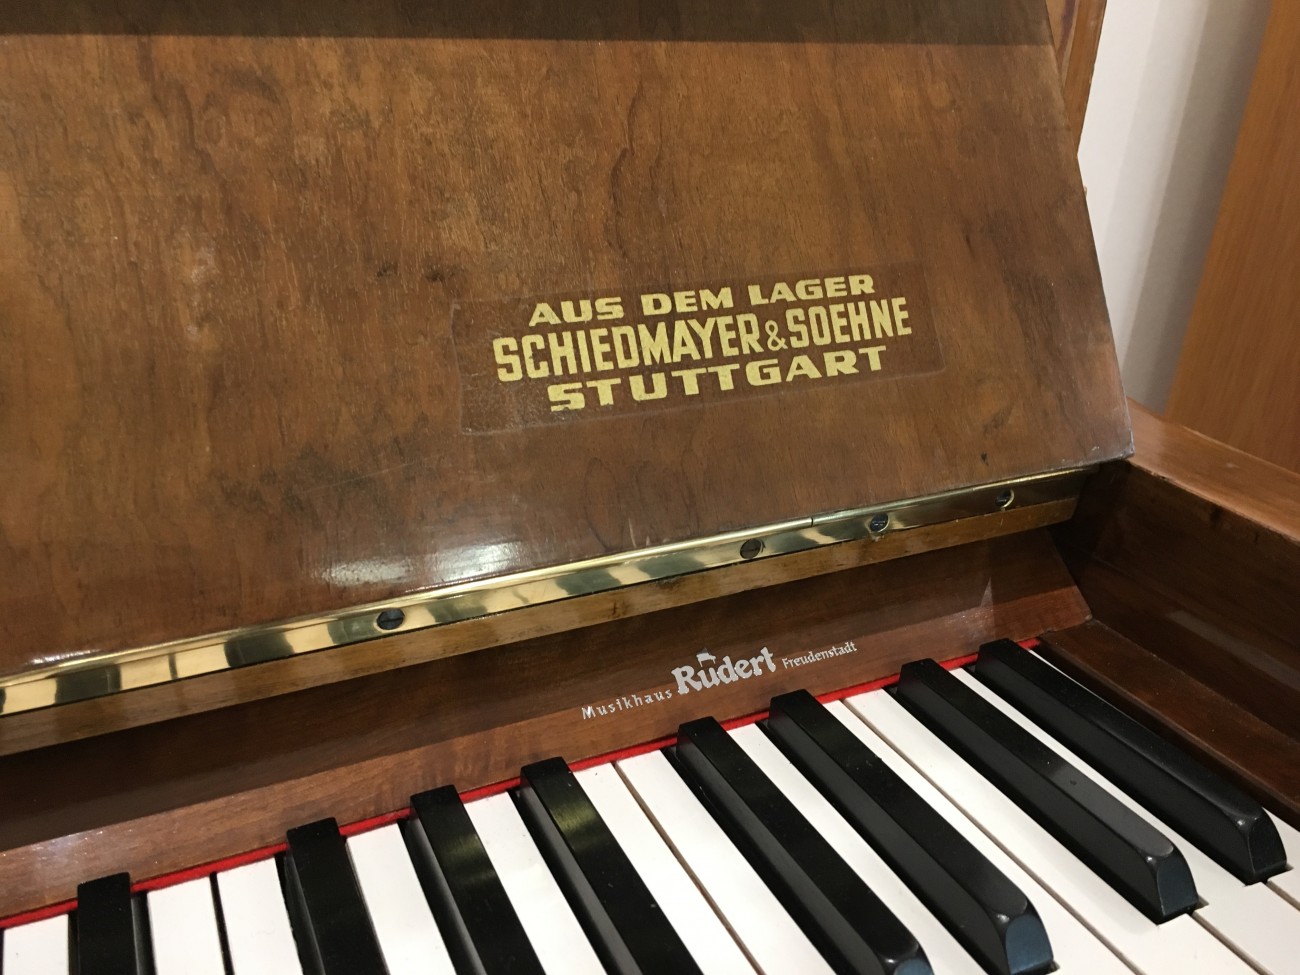 Schiedmayer & Soehne Klavier gebraucht 